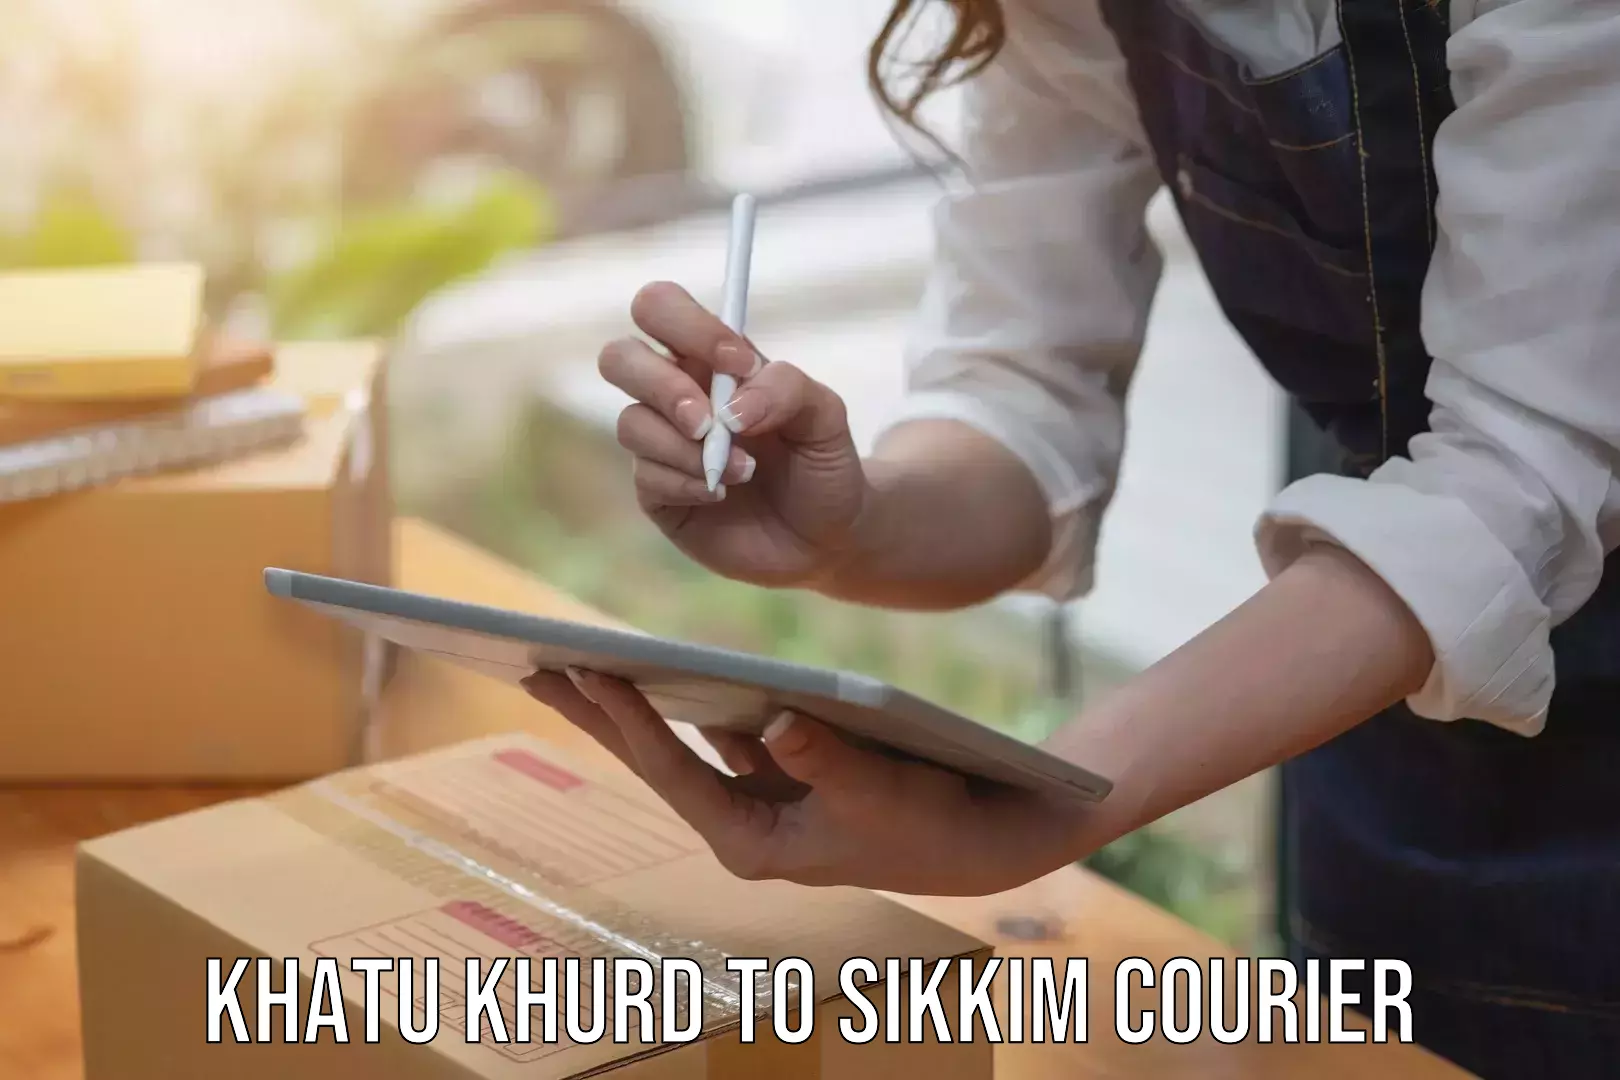 Courier service comparison Khatu Khurd to Singtam